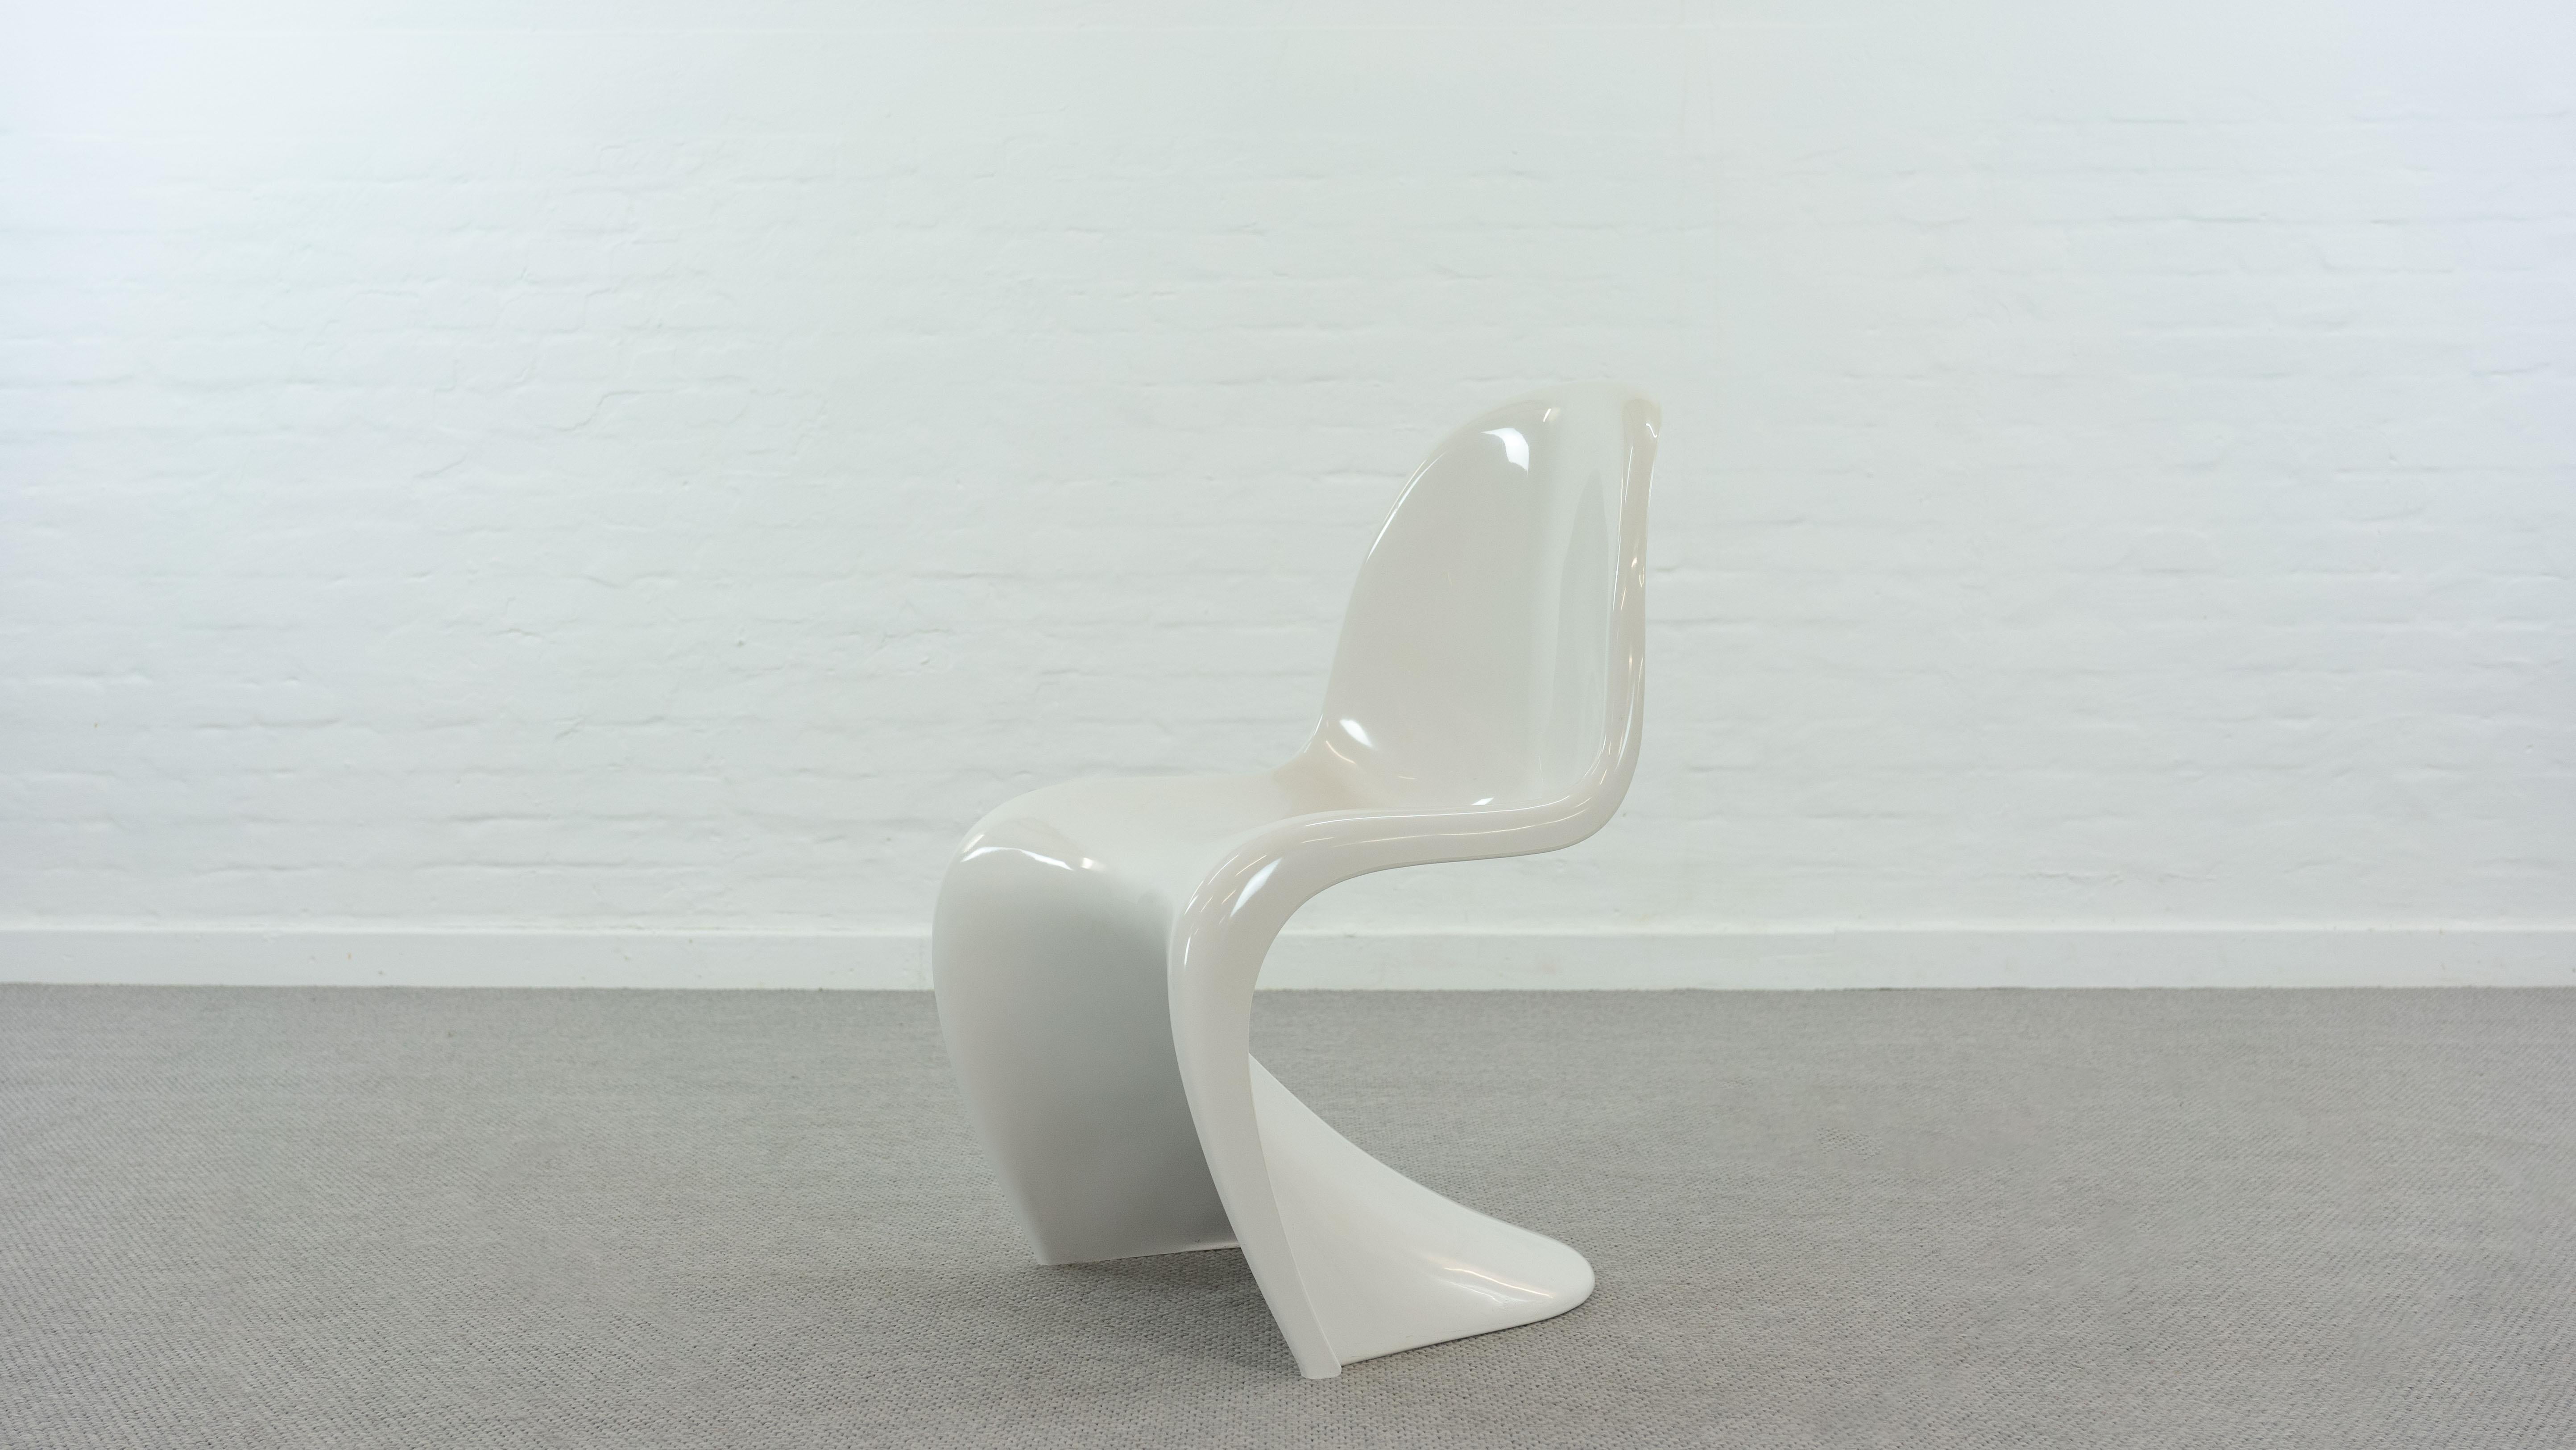 Panton S-Chair, entworfen von Verner Panton für Hermann Miller / Fehlbaum. Farbe: weiß. Der Stuhl ist aus der 2. Produktionsserie ab 1970 in thermoplastischem Luran-s mit Verstärkungsrippen an der Unterseite. Gekennzeichnet mit Herstellerlogo und